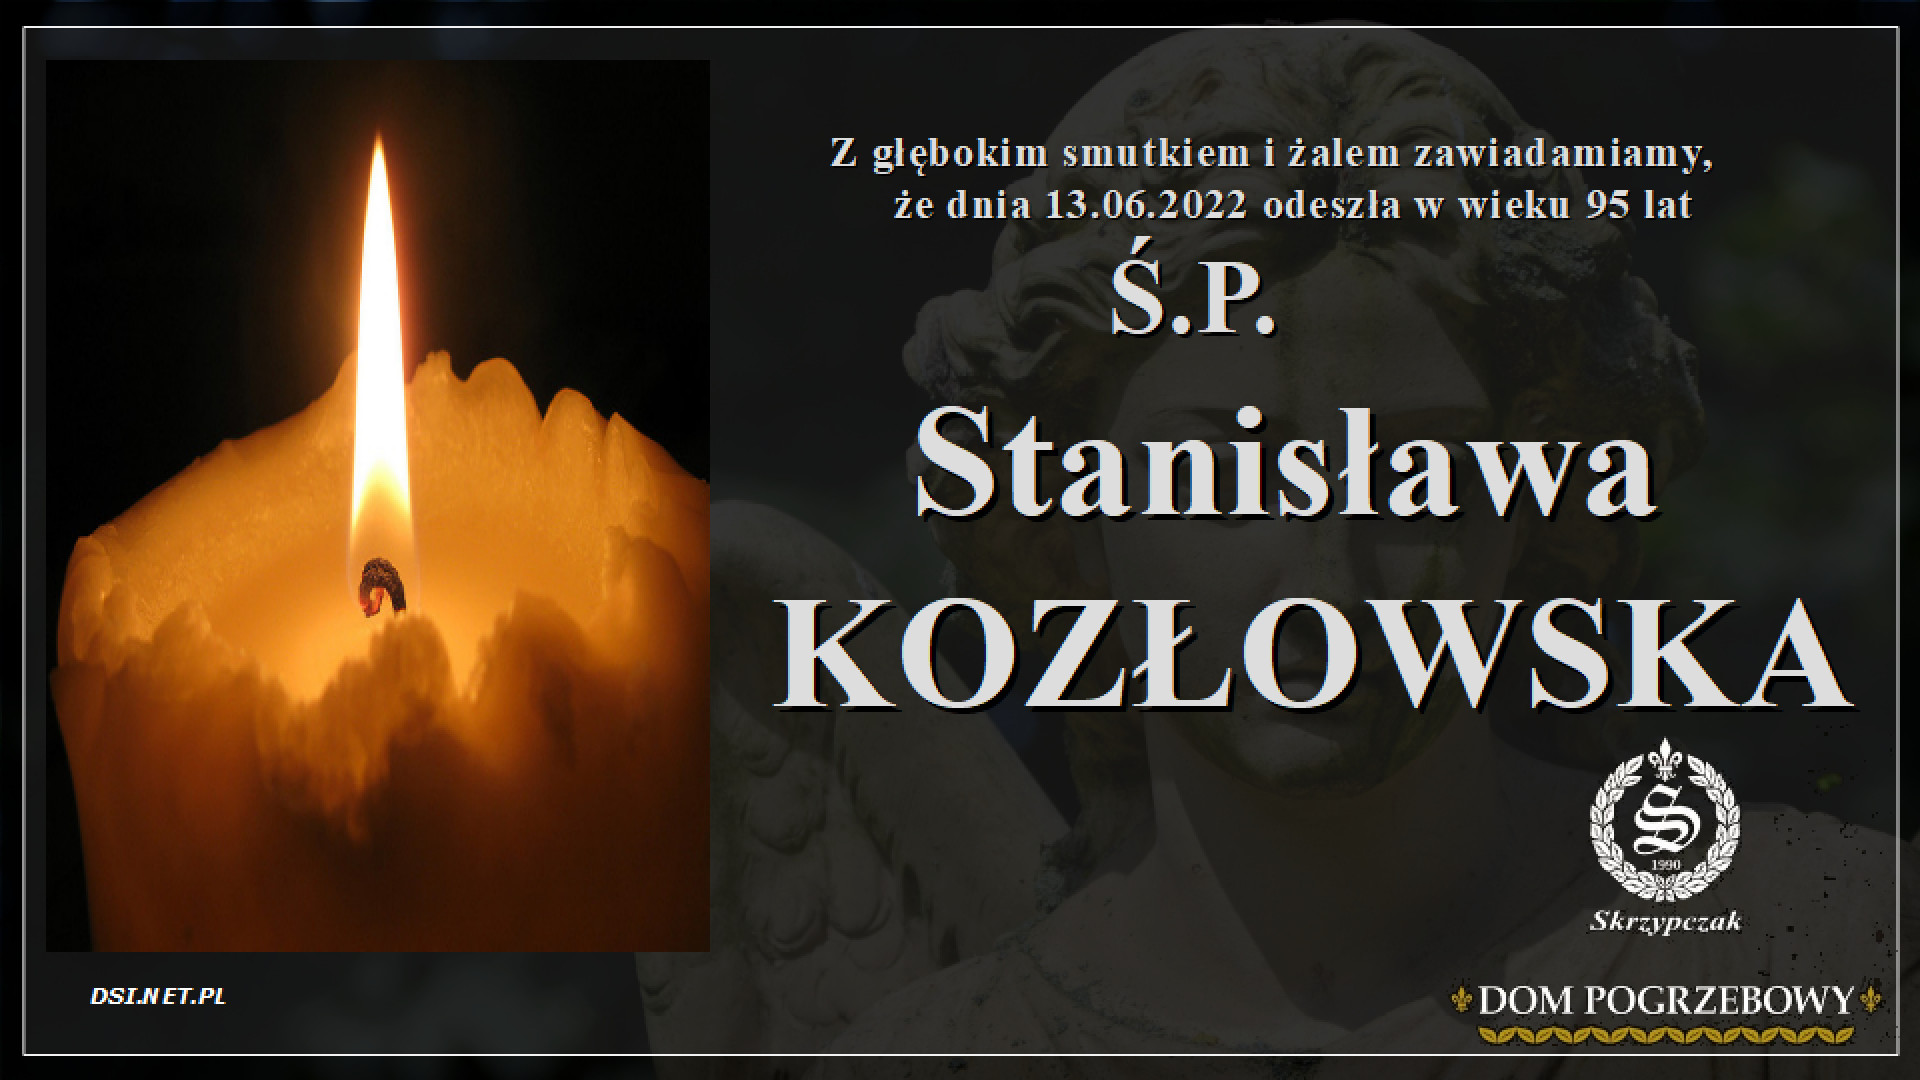 Ś.P. Stanisława Kozłowska